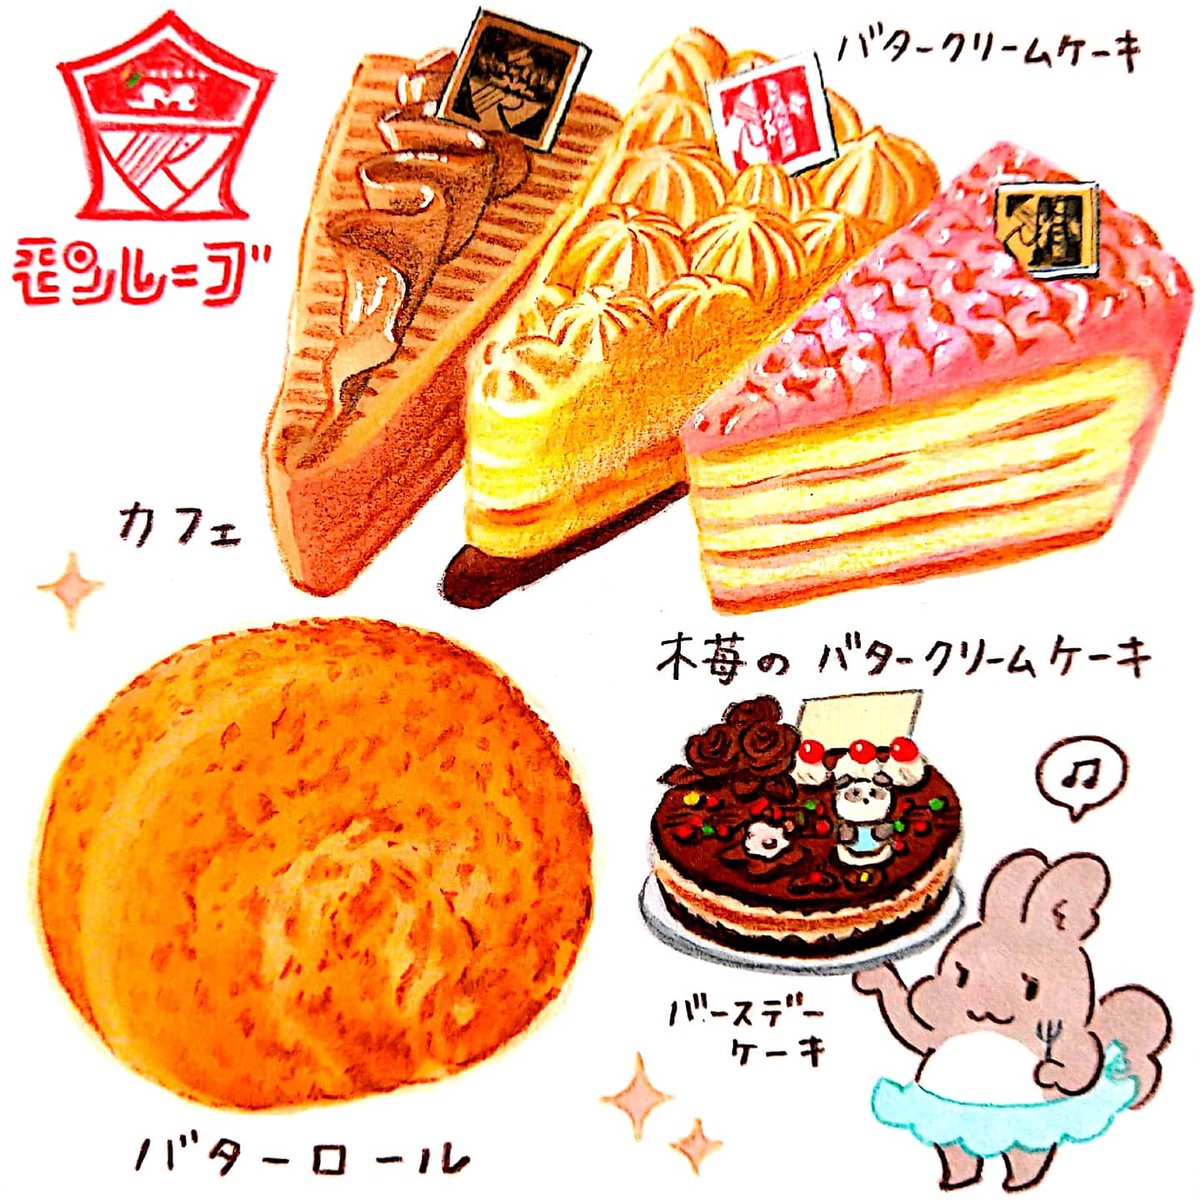 今日は #スイーツの日 。札幌・洋菓子の店モンレーブさんのケーキ。札幌オリンピック開催の1972年と時を同じくして創業。ショーケースの中央に輝くのは昔懐かしのバタークリームのケーキです。
#田島ハルのくいしん簿 #北海道 #朝日新聞 #イラスト #食べ物イラスト 